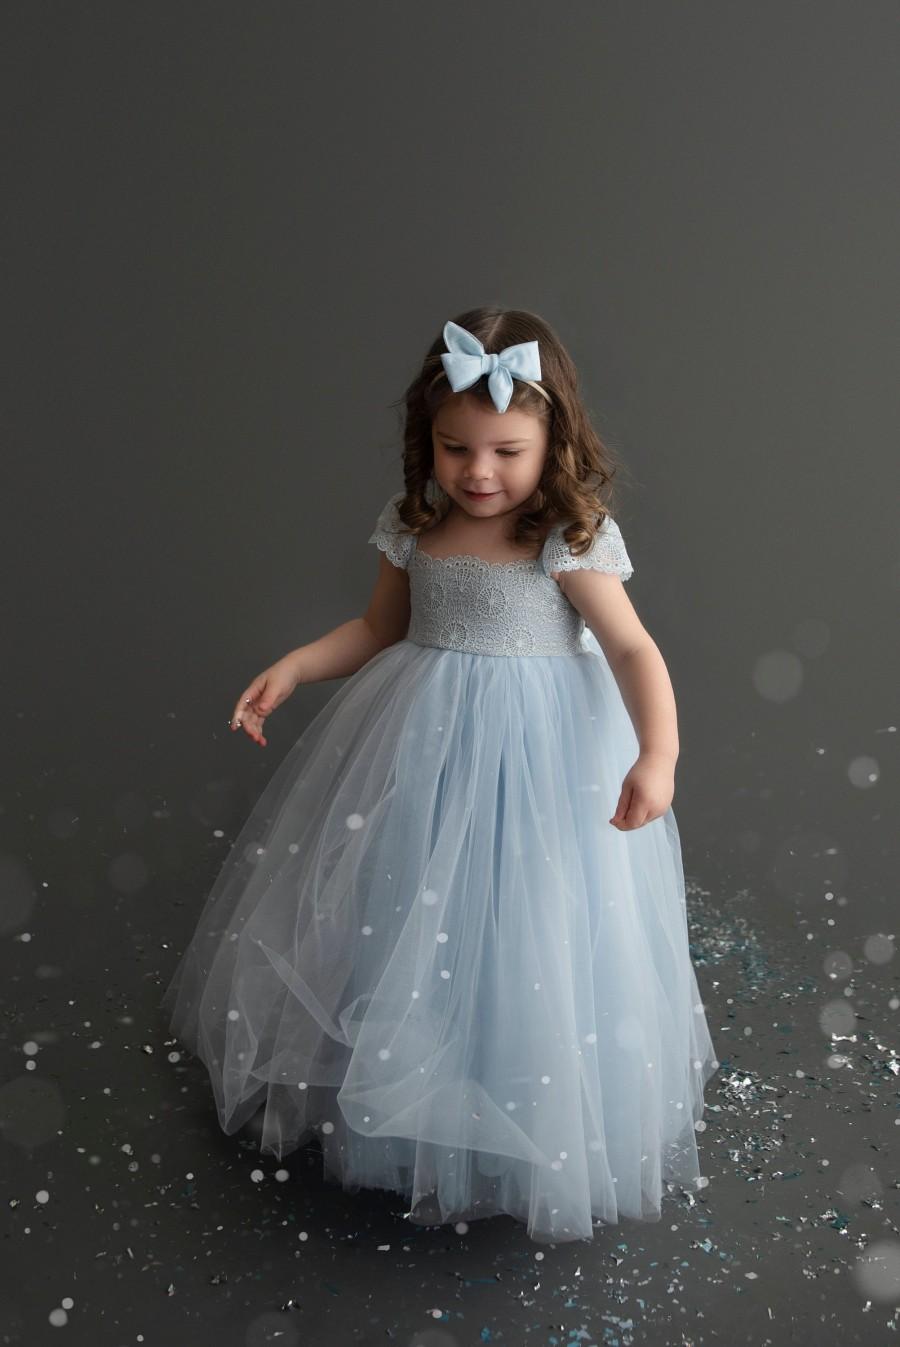 زفاف - Tulip Light Blue Flower Girl Dress Dresses Ice Outfit Girls Tulle Lace Newborn Princess 1st Birthday Tutu Baby Gown Photoshoot Infant Formal